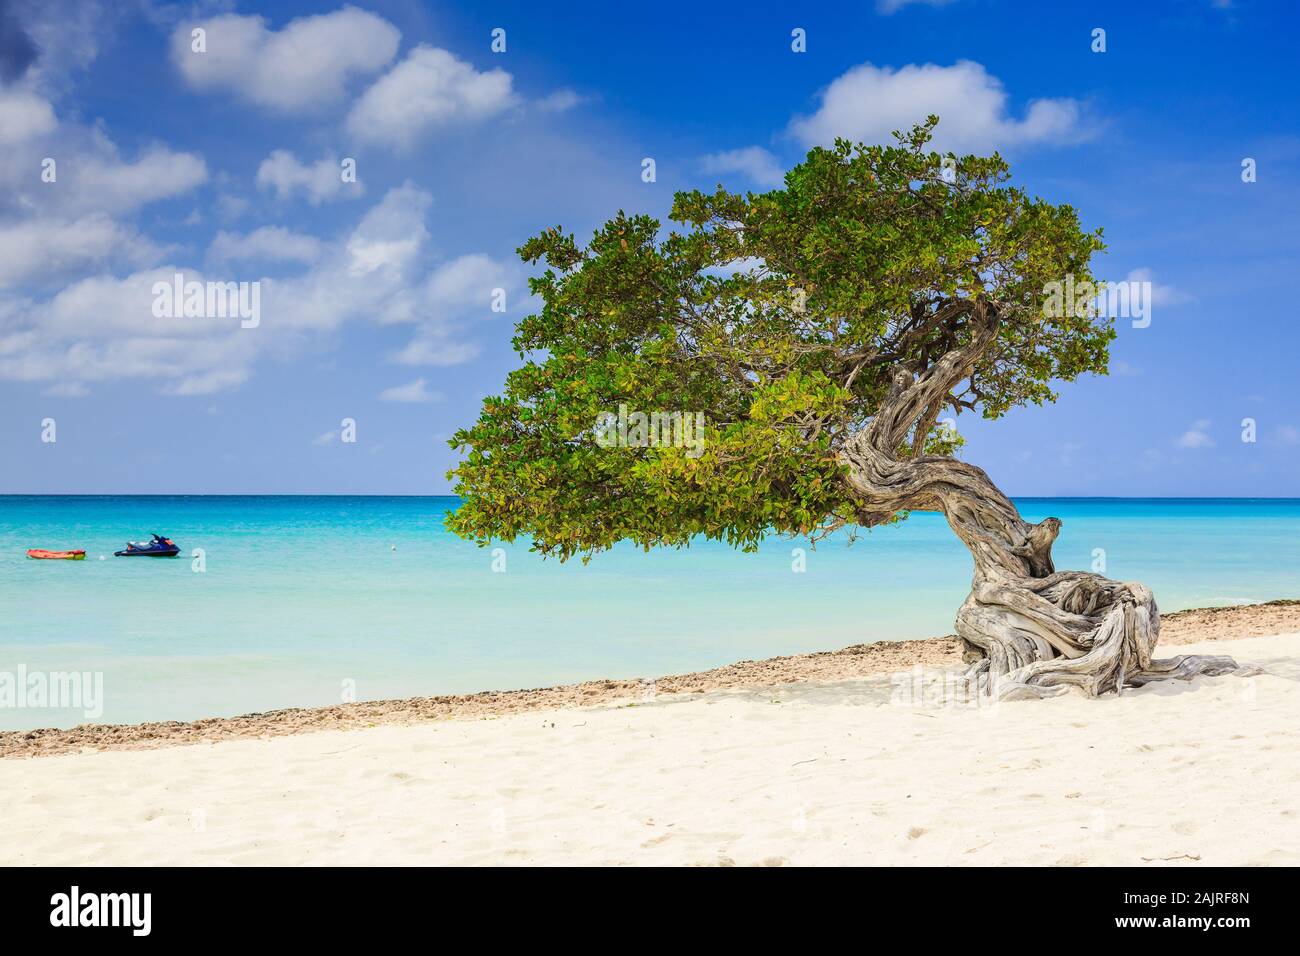 Aruba, Antilles néerlandaises. Divi Divi arbre sur la plage. Banque D'Images